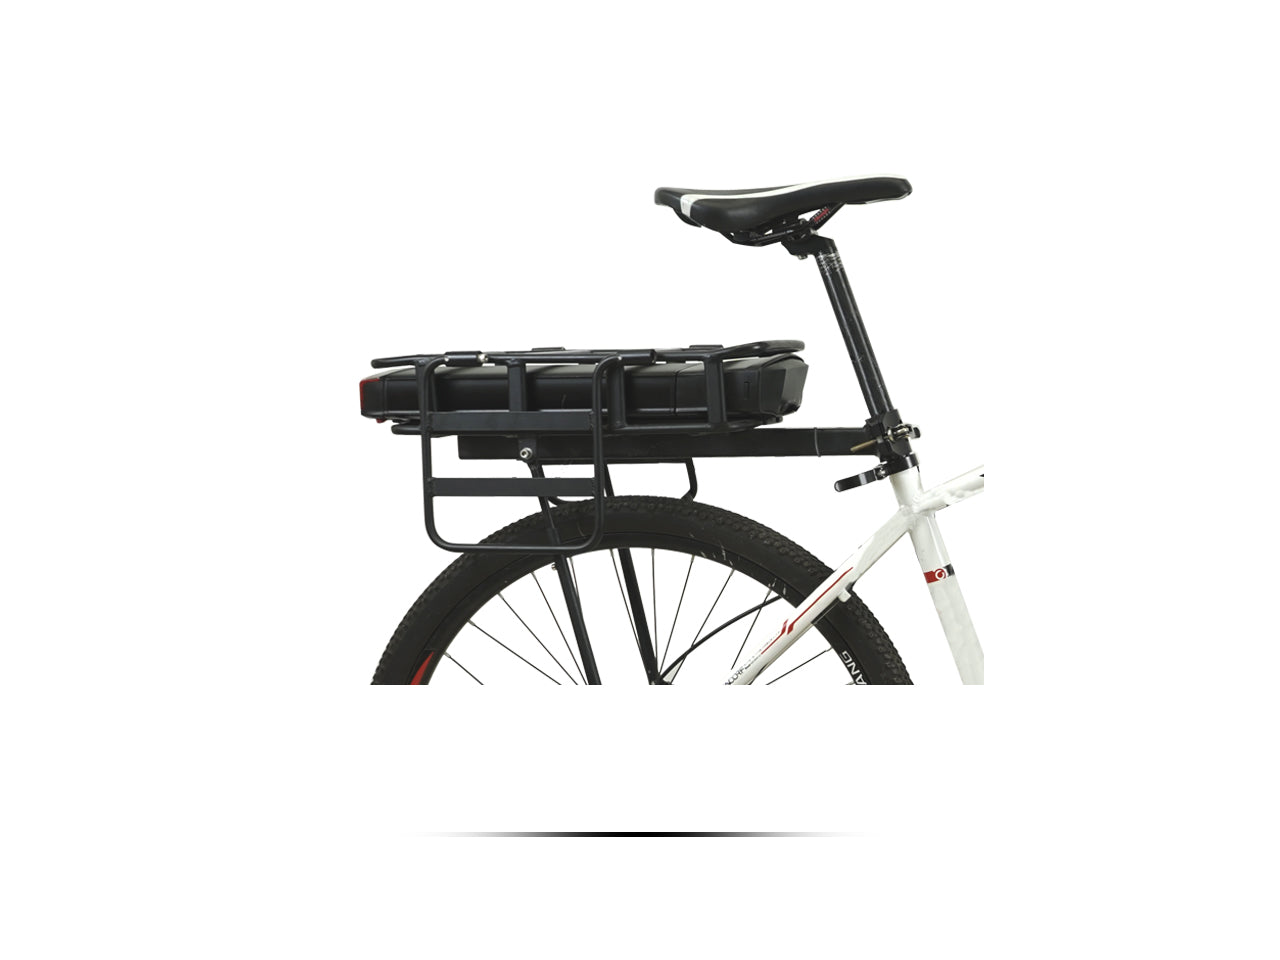 Kit de conversión de bicicleta eléctrica Serie BZ